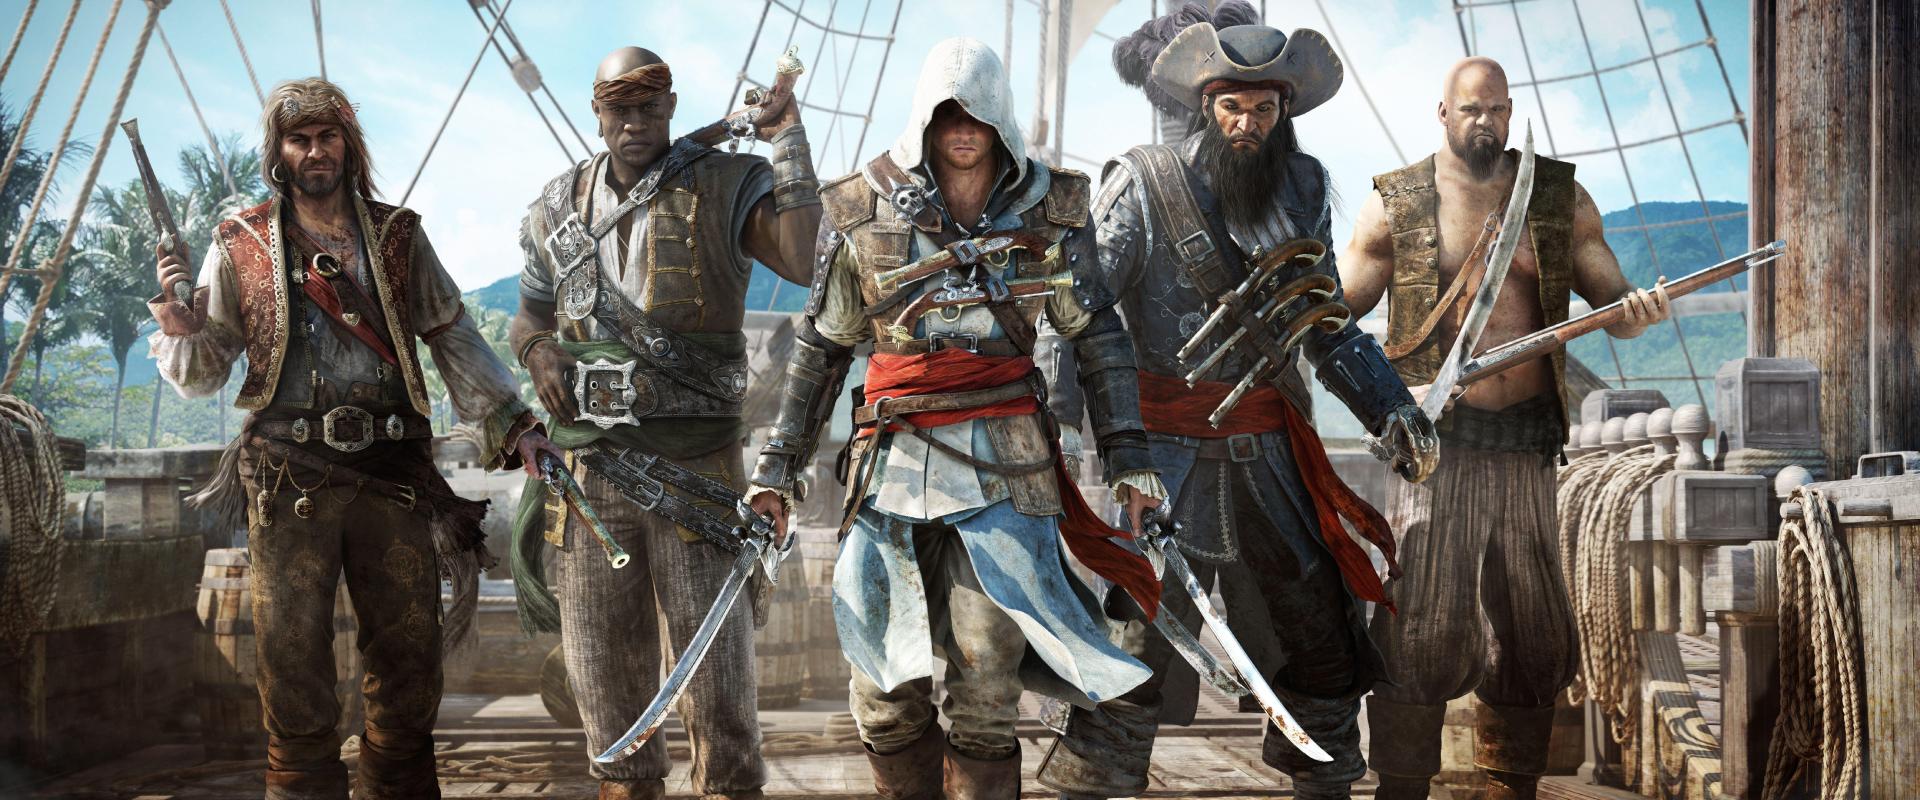 Varázslatos lesz az Assassin's Creed IV: Black Flag remake, egy méltó felújítás